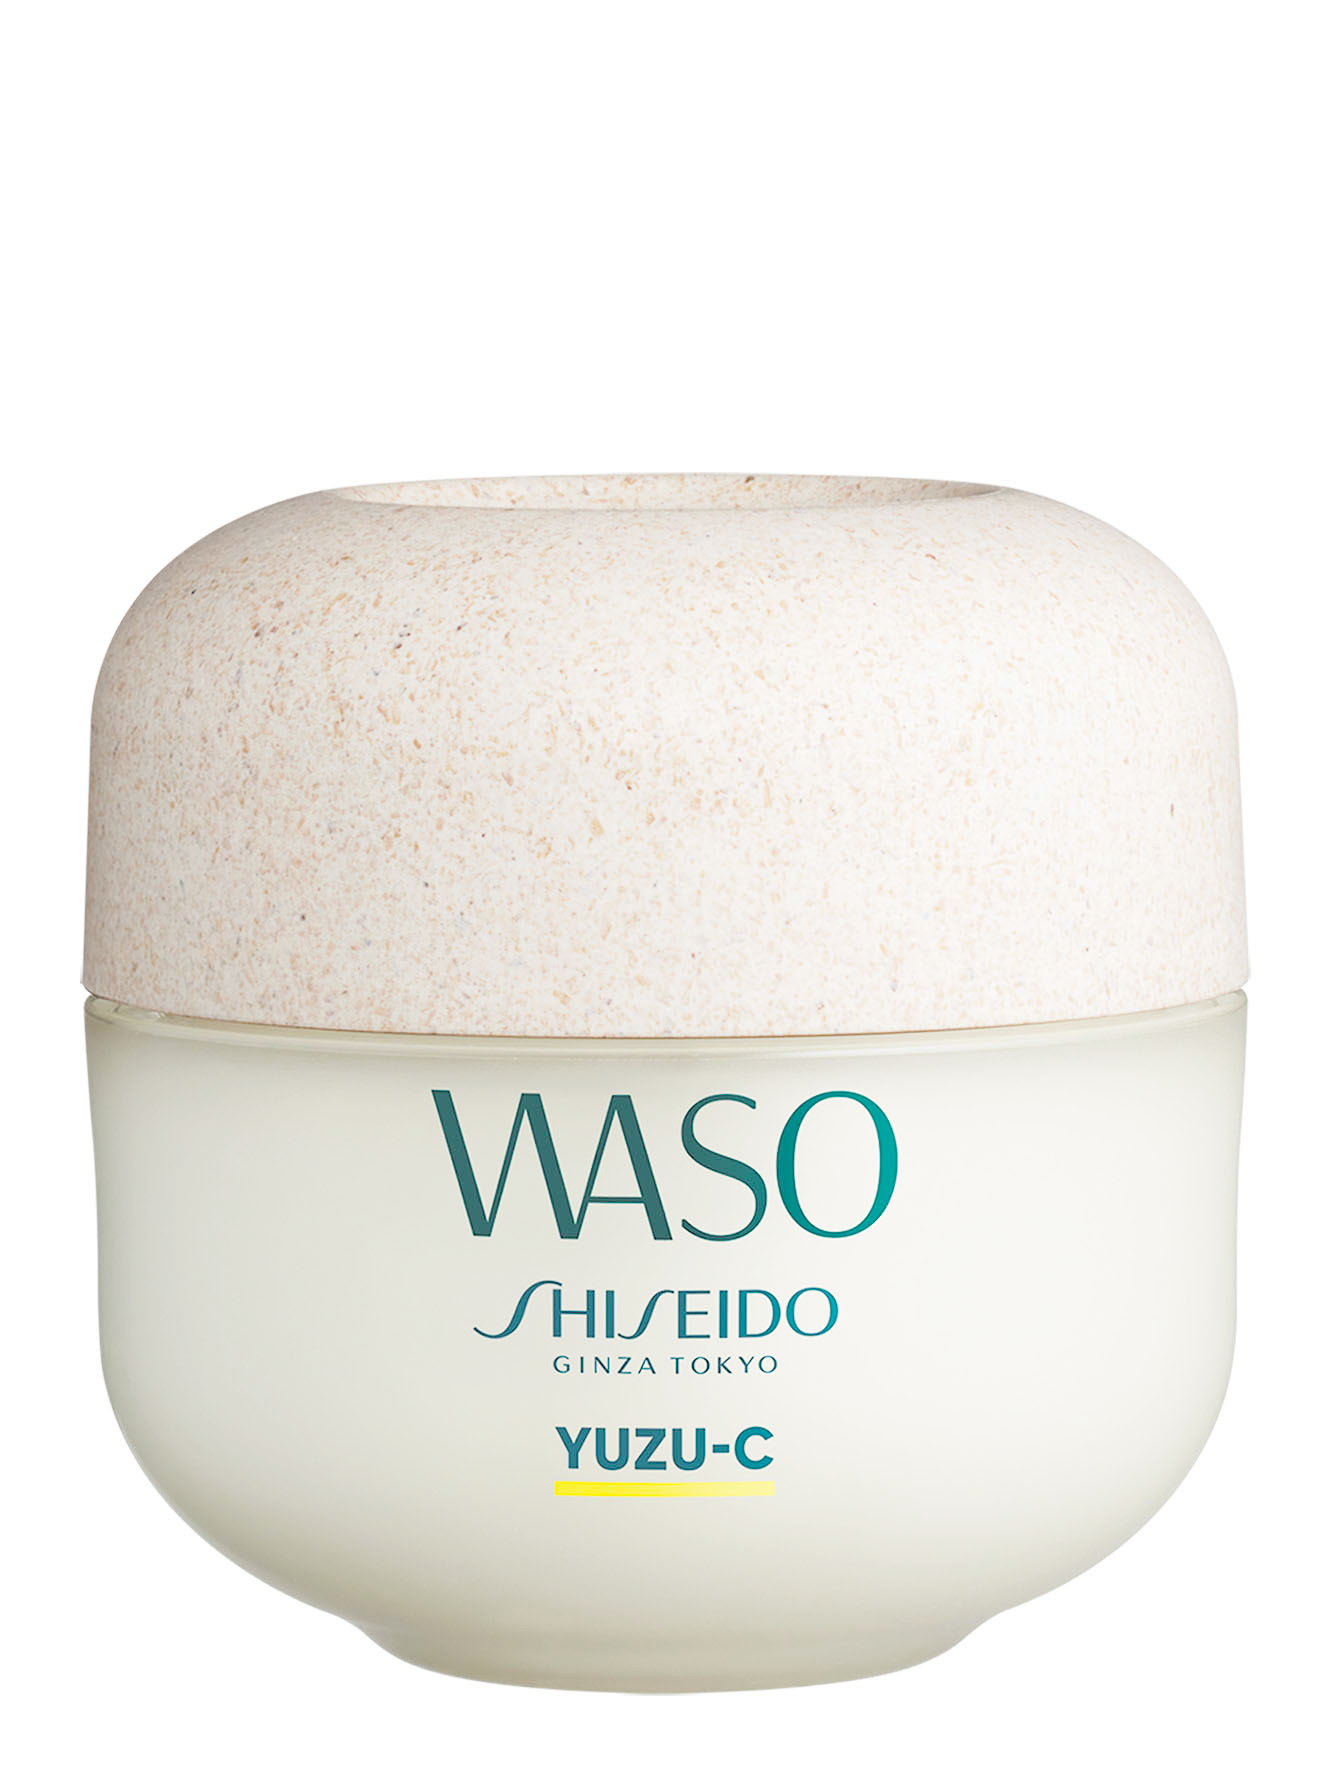 SHISEIDO WASO YUZU-C Ночная восстанавливающая маска, 50 мл - Общий вид